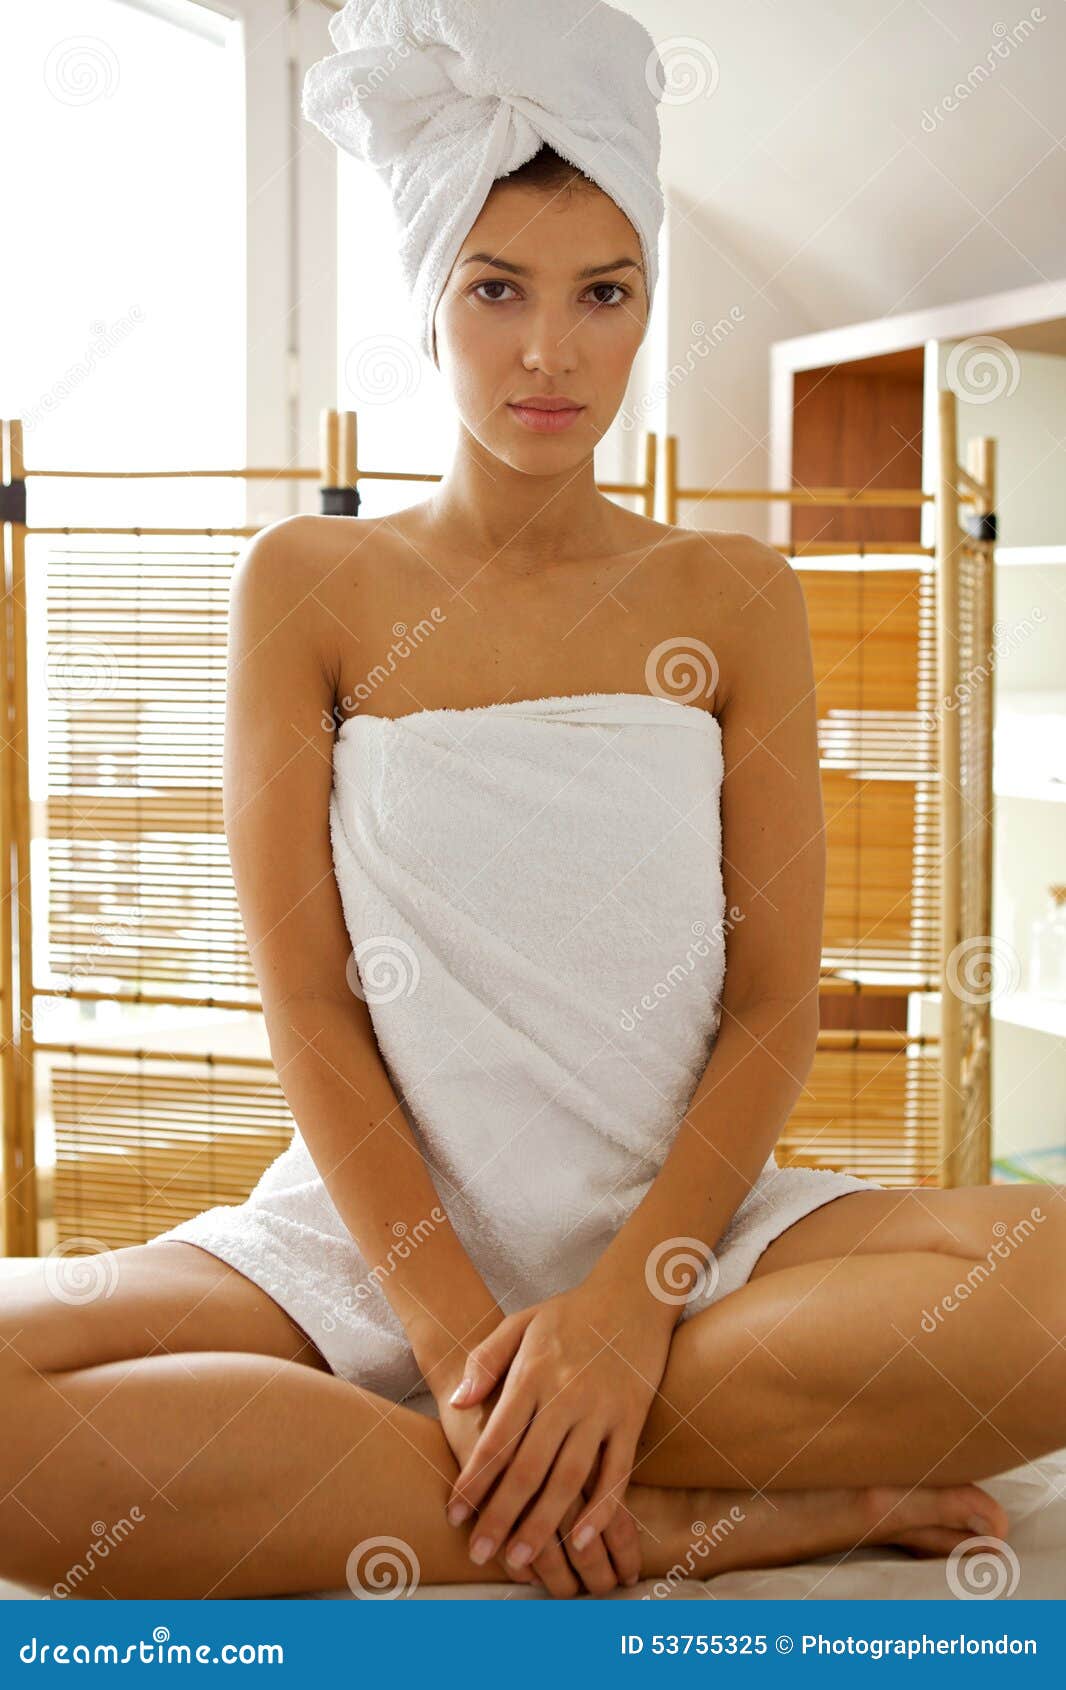 Ходит в полотенце. Женщины завёрнутые в полотенце. Девушка завернутая в полотенце. Азиатская девушка в полотенце. Девушка обернутая в полотенце.